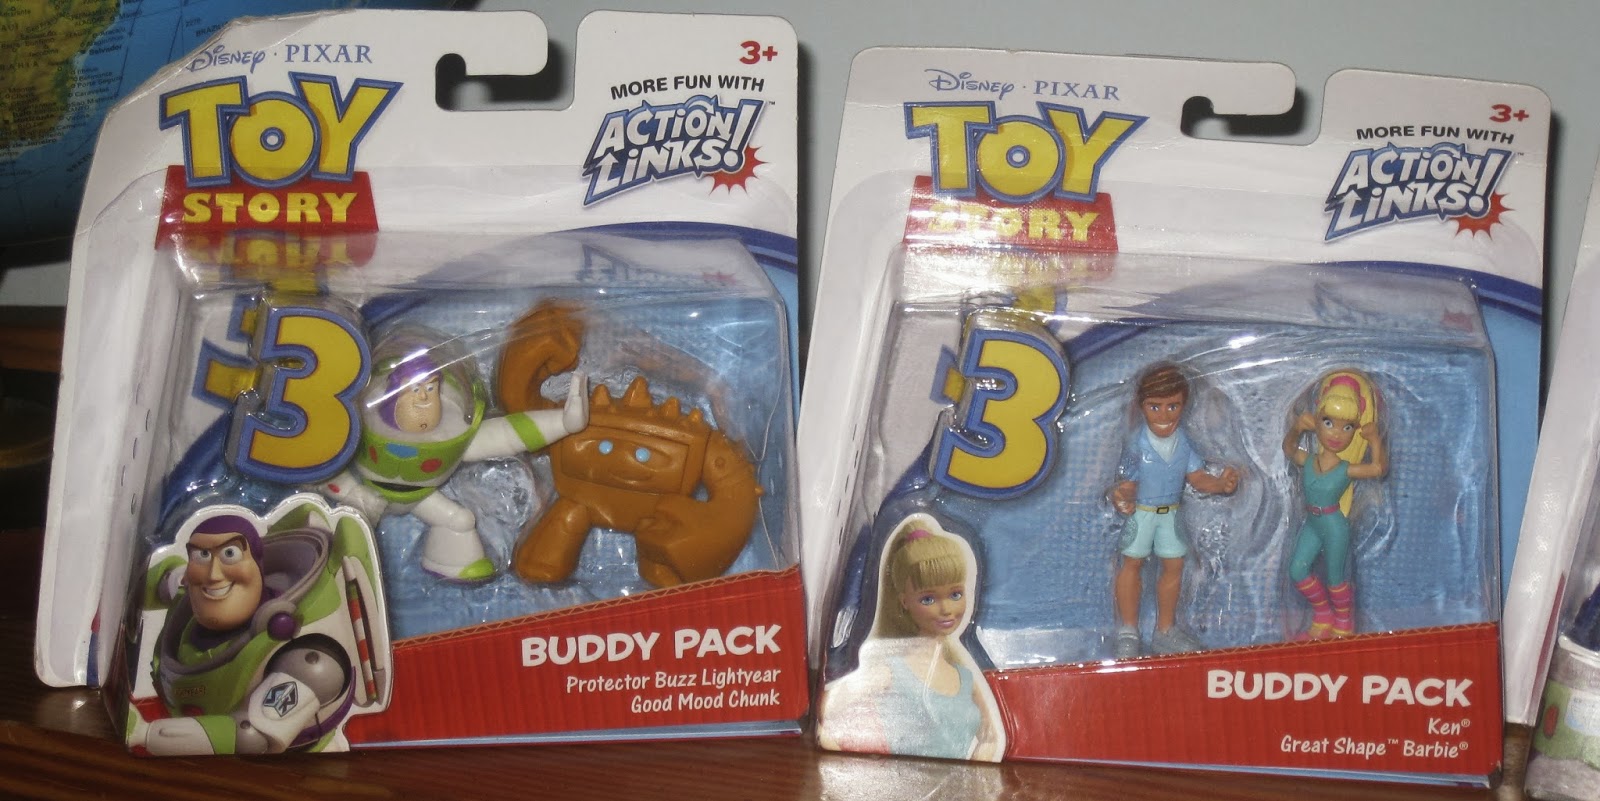 Buddy Pack Toy Story-Figuren OVP-Disney Pixar-Mattel Aussuchen 